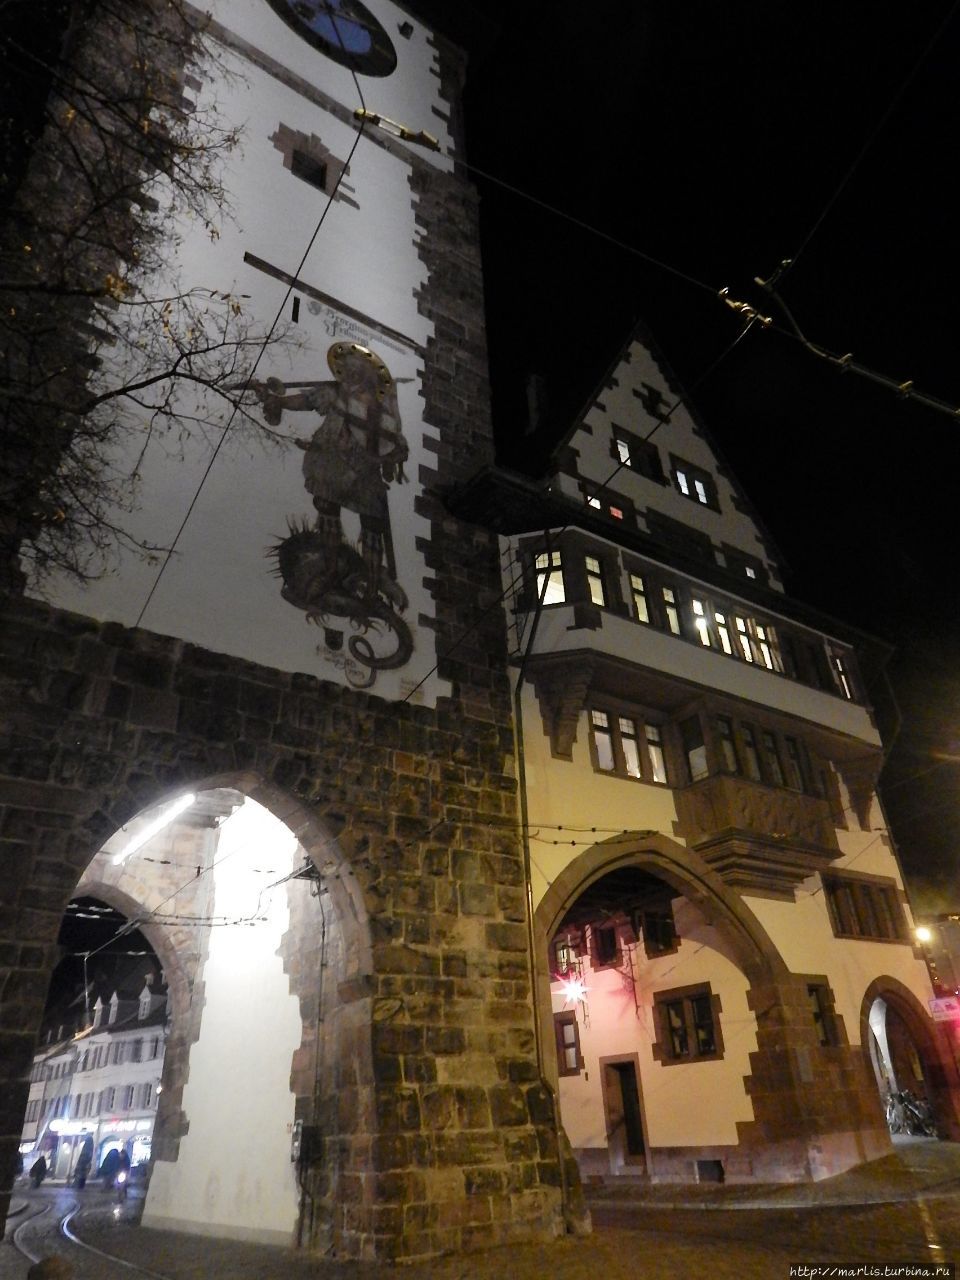 Вечером в историческом центре Фрайбурга Фрайбург-им-Брайсгау, Германия